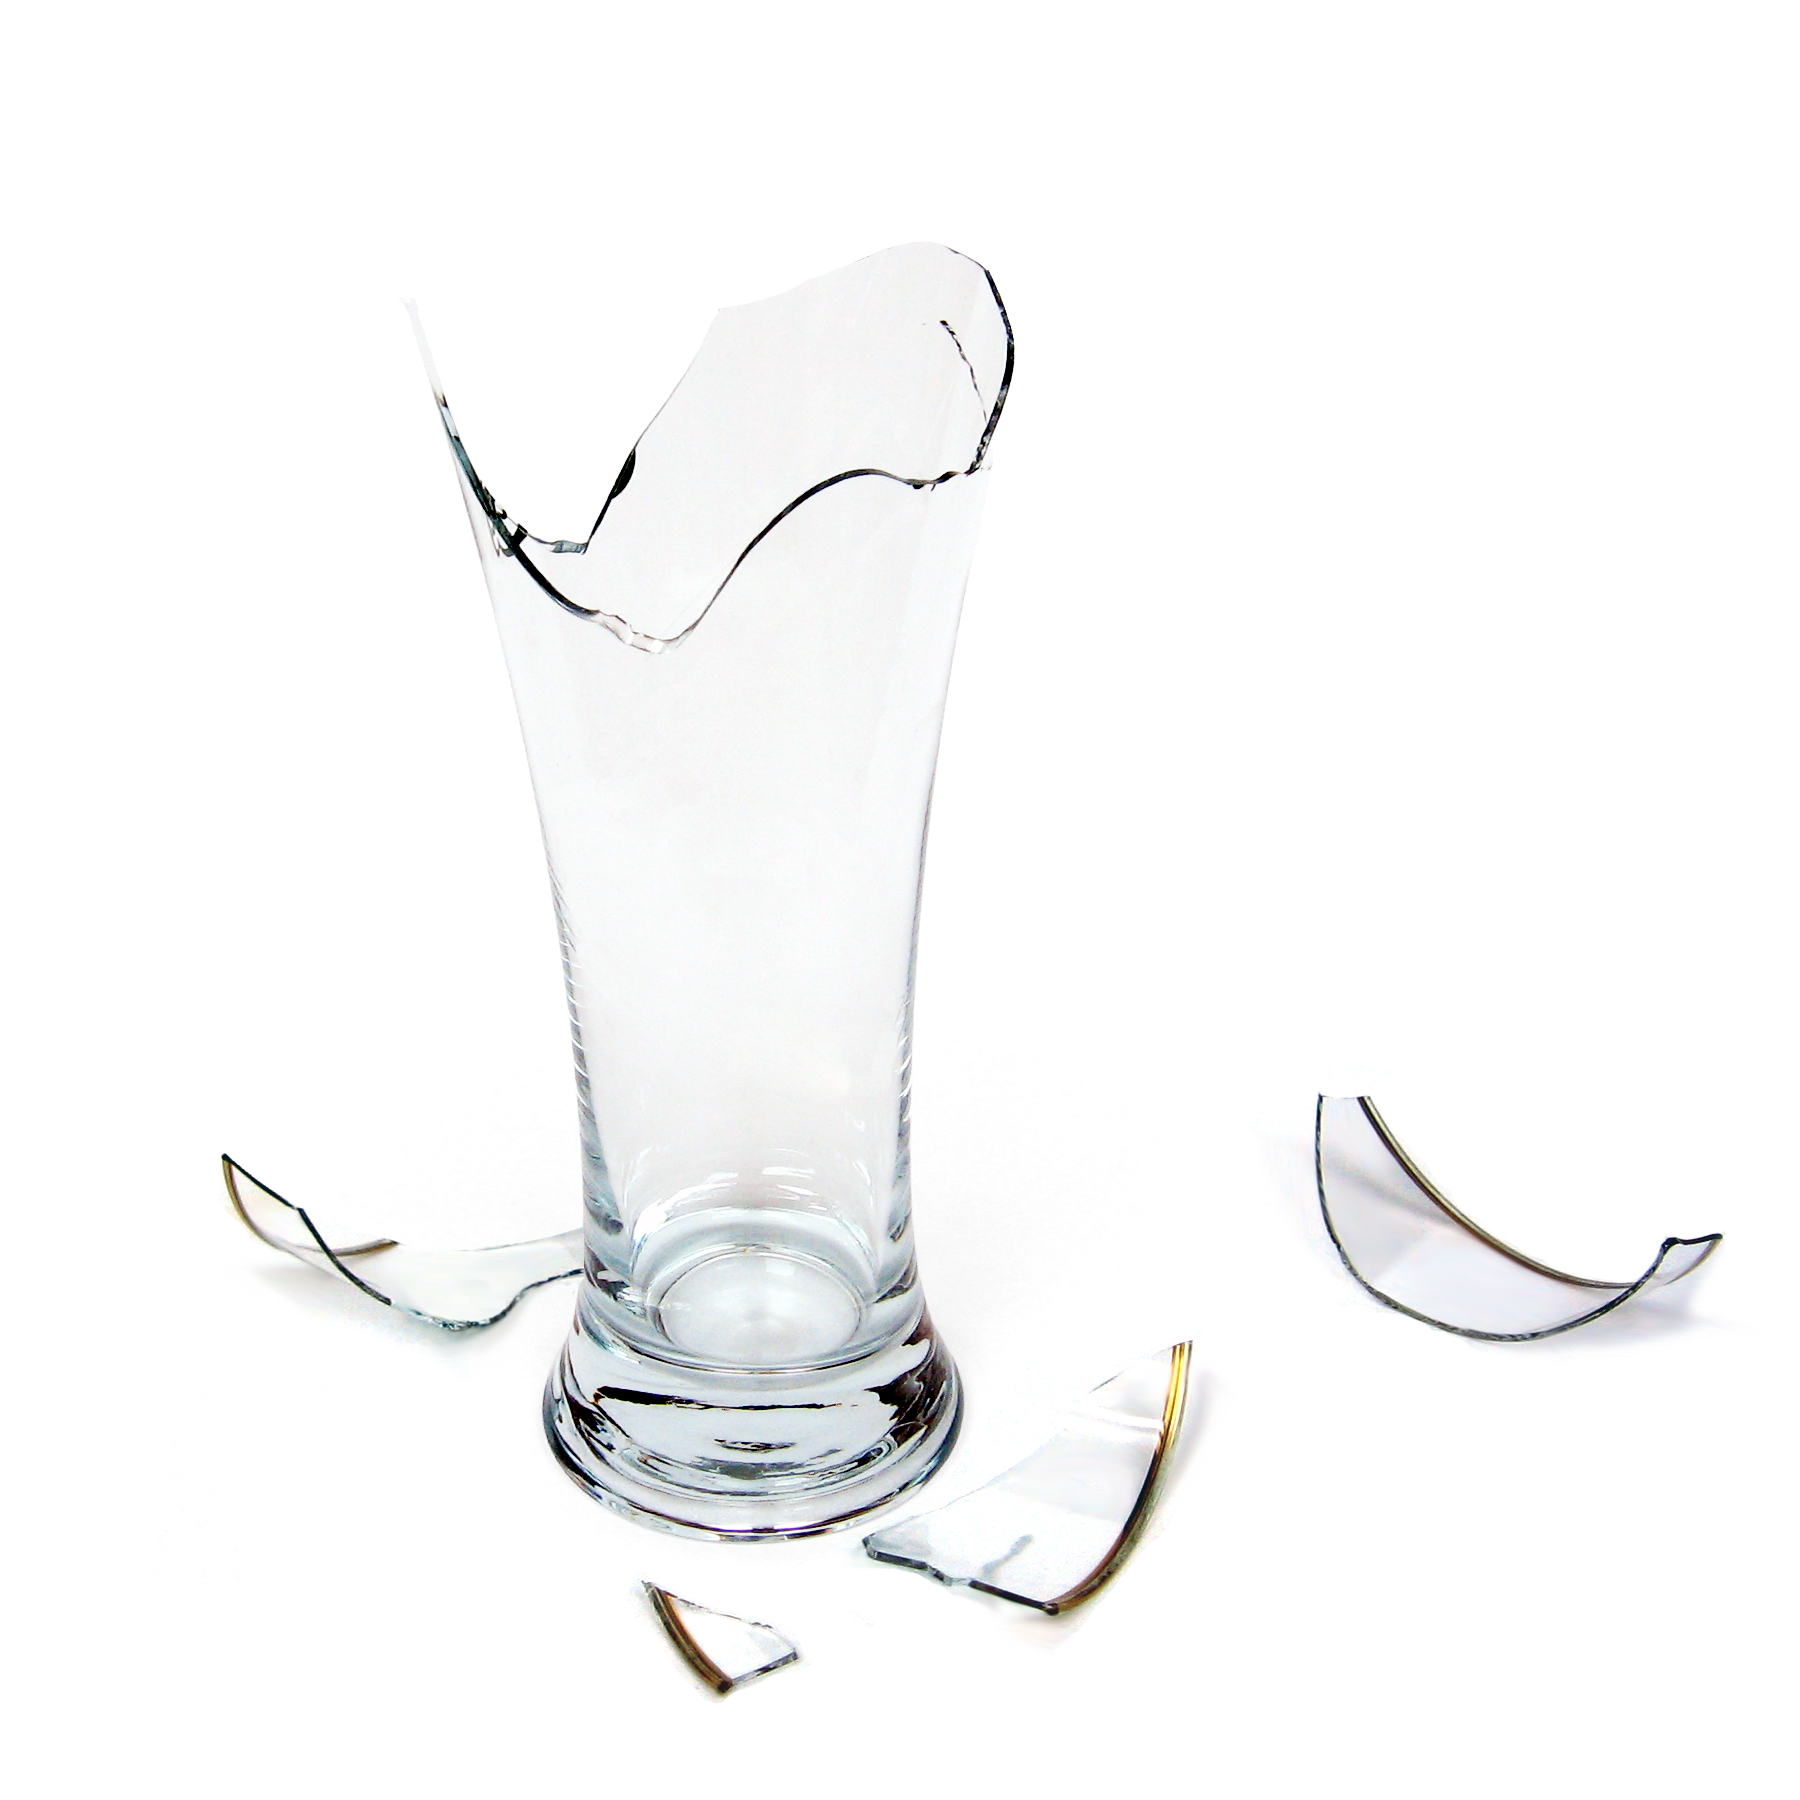 Звук разбитой вазы. Стеклянные предметы. Разбитая стеклянная ваза. Стеклянные предметы разбитые. Разбитый стакан.